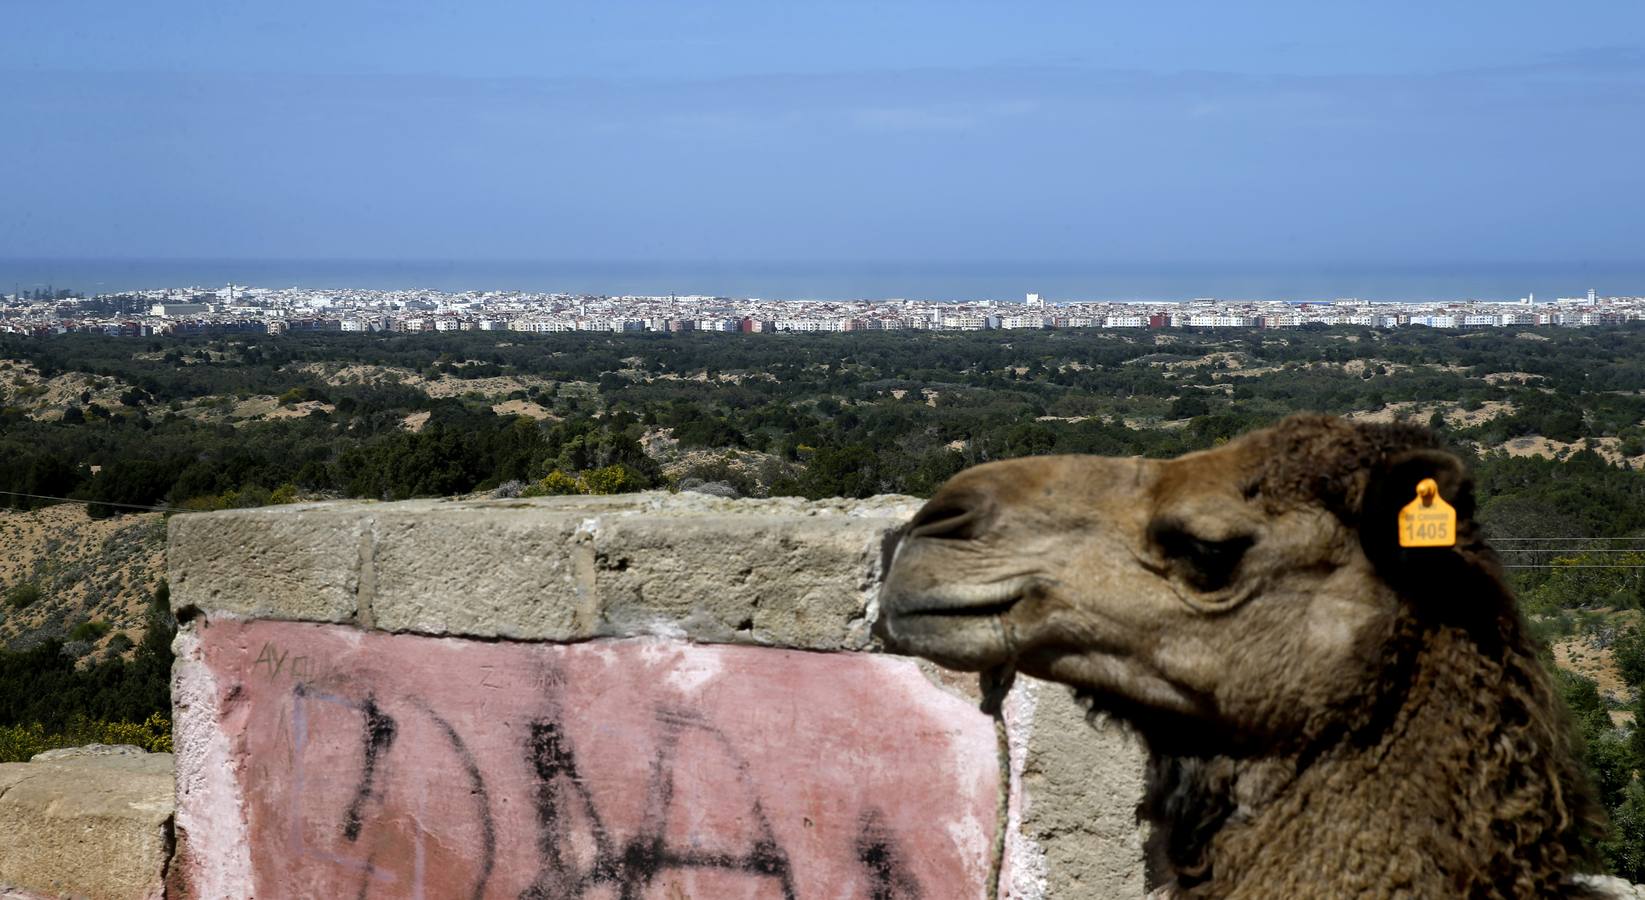 Camello en un mirador en la carretera de acceso a Essaouira.